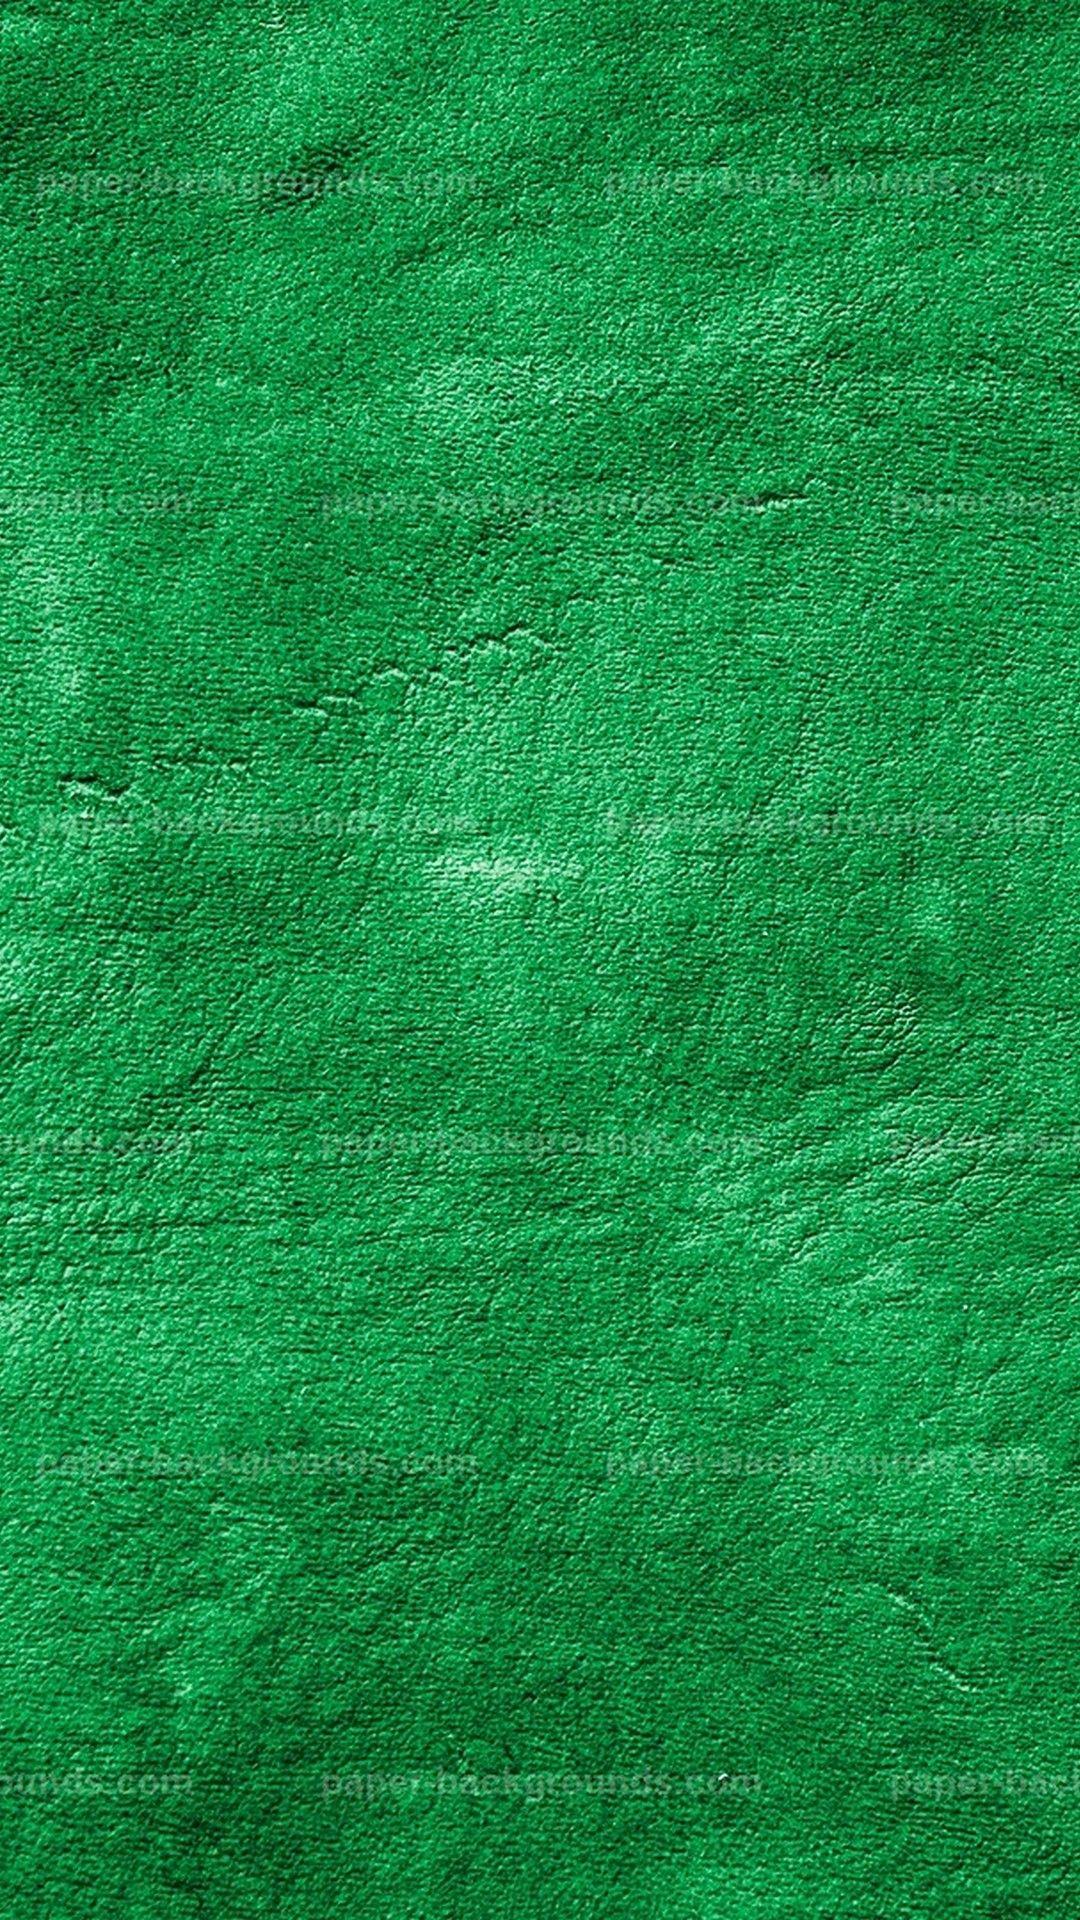 Whatsapp green HD wallpapers | Pxfuel